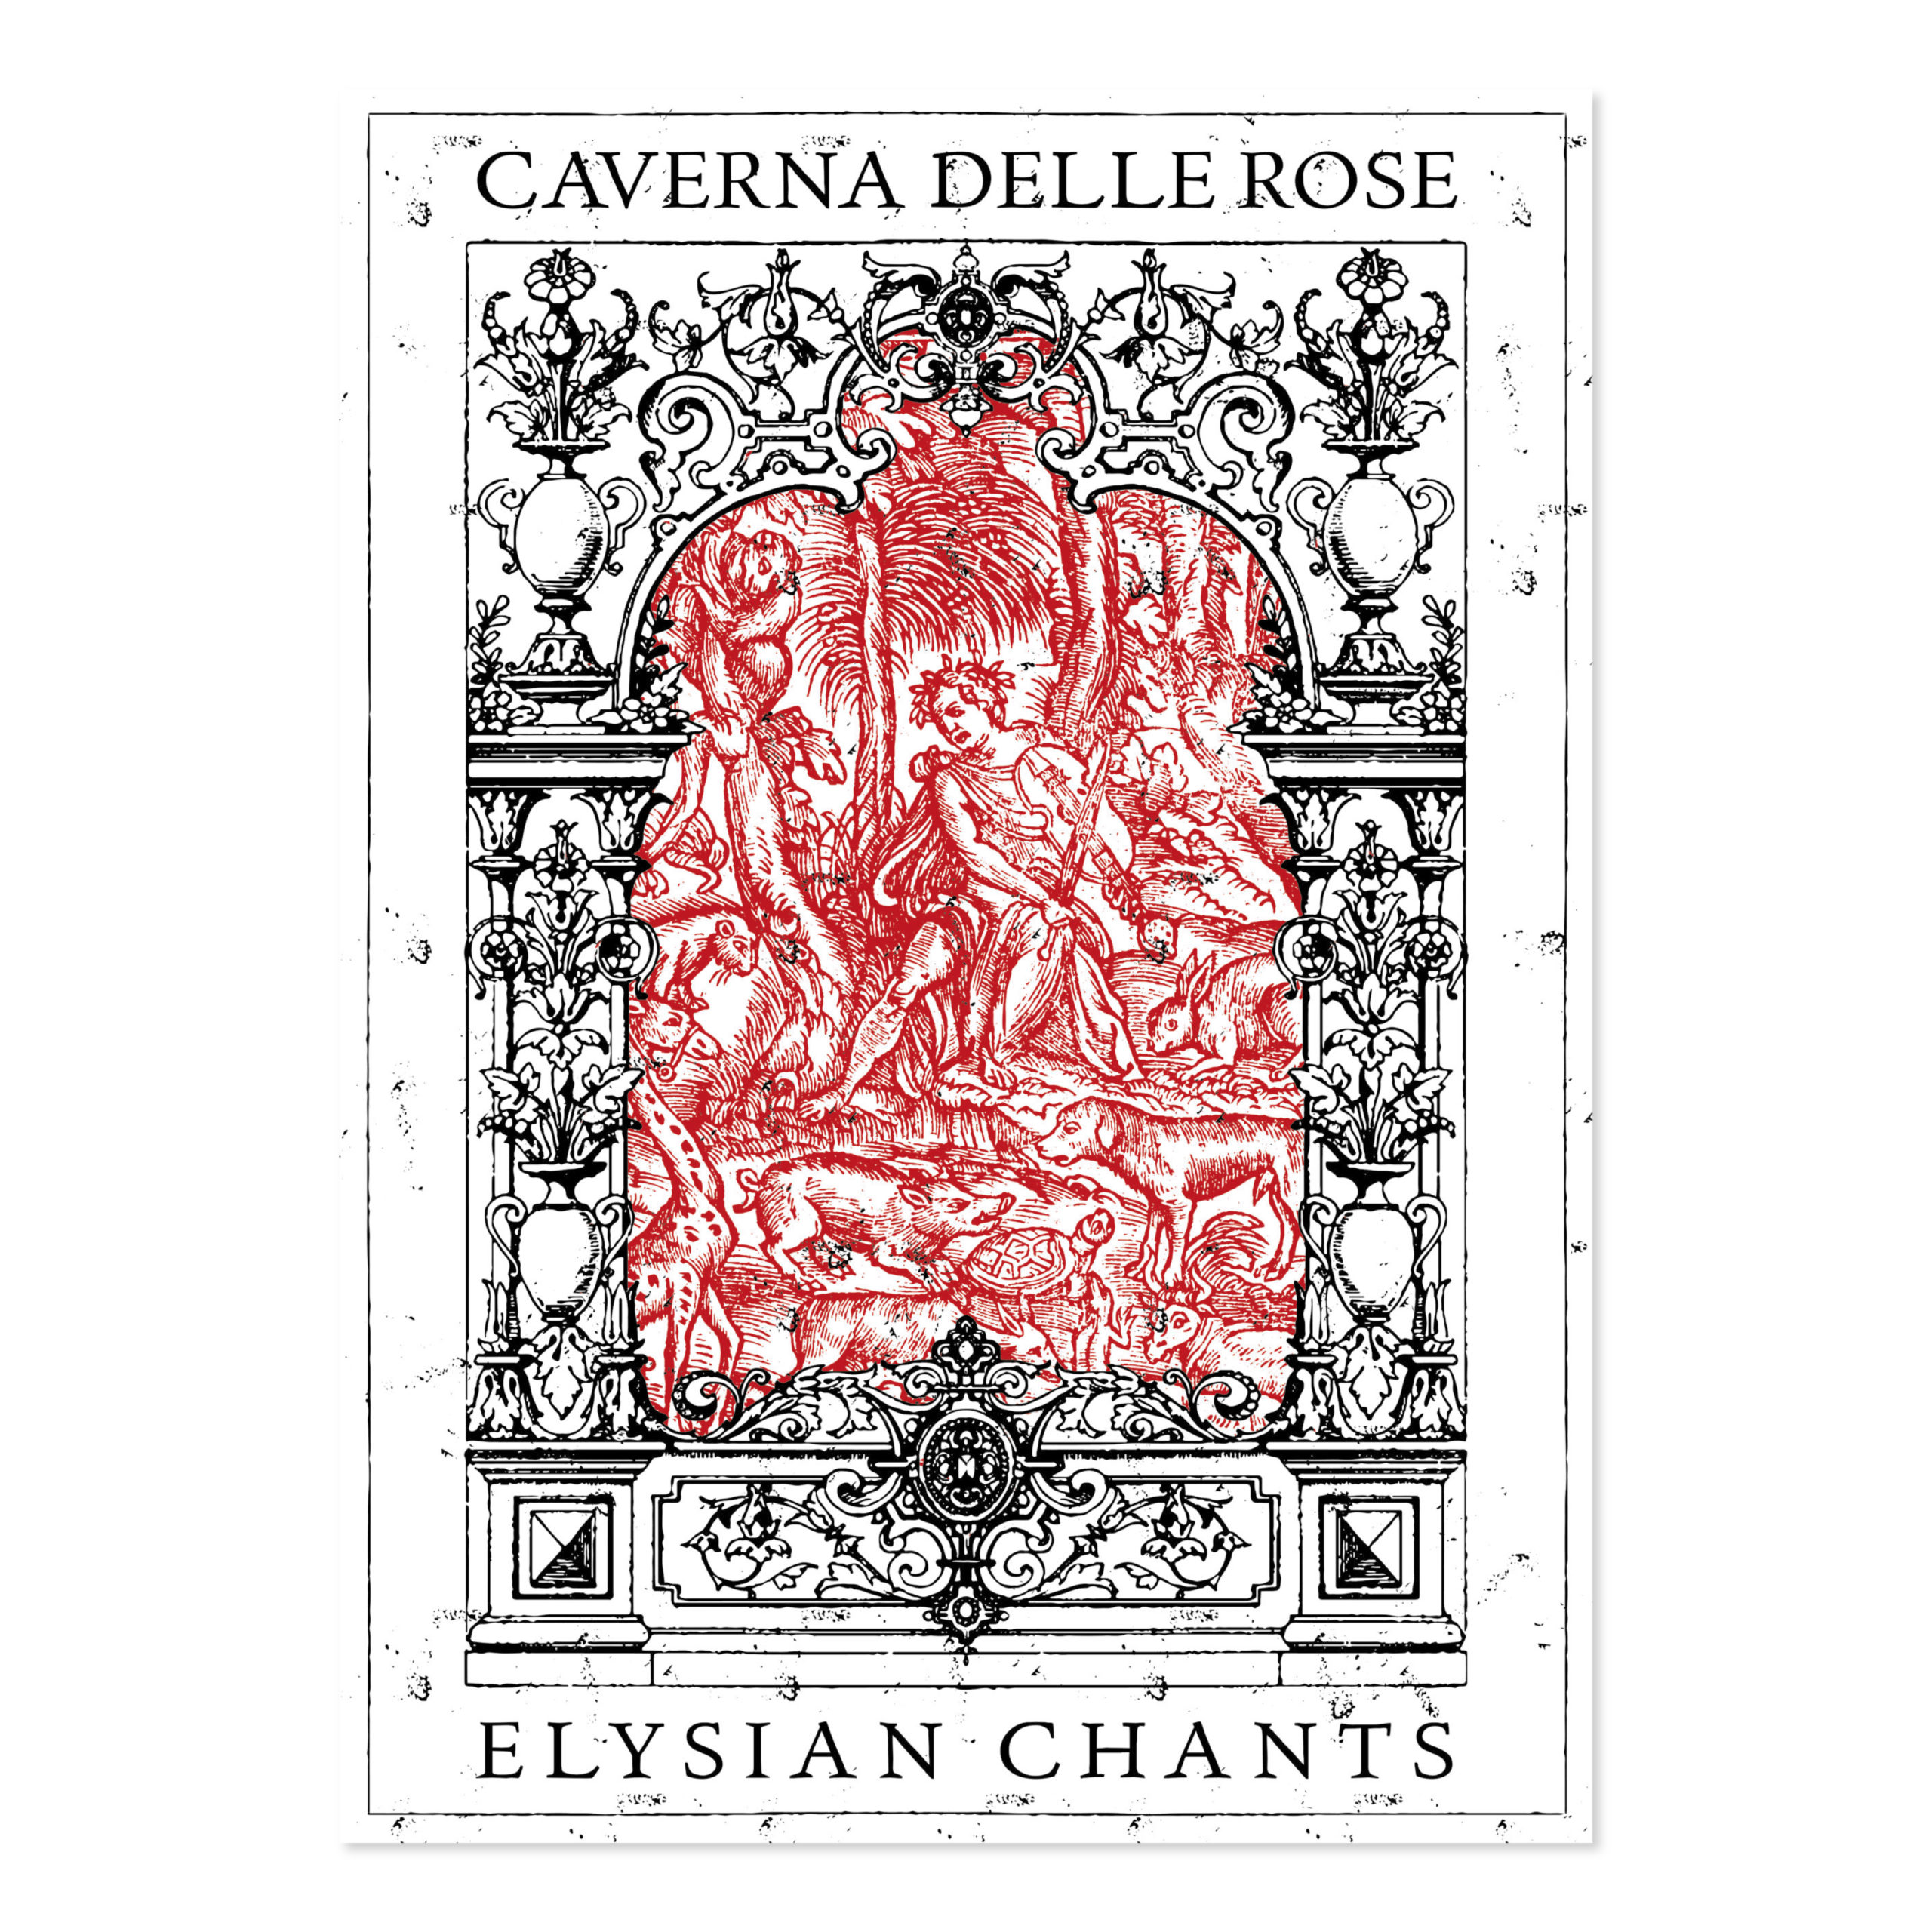 diego-cinquegrana-caverna-delle-rose-elysian-chants-orpheus-poster-mock-2_Tavola disegno 1